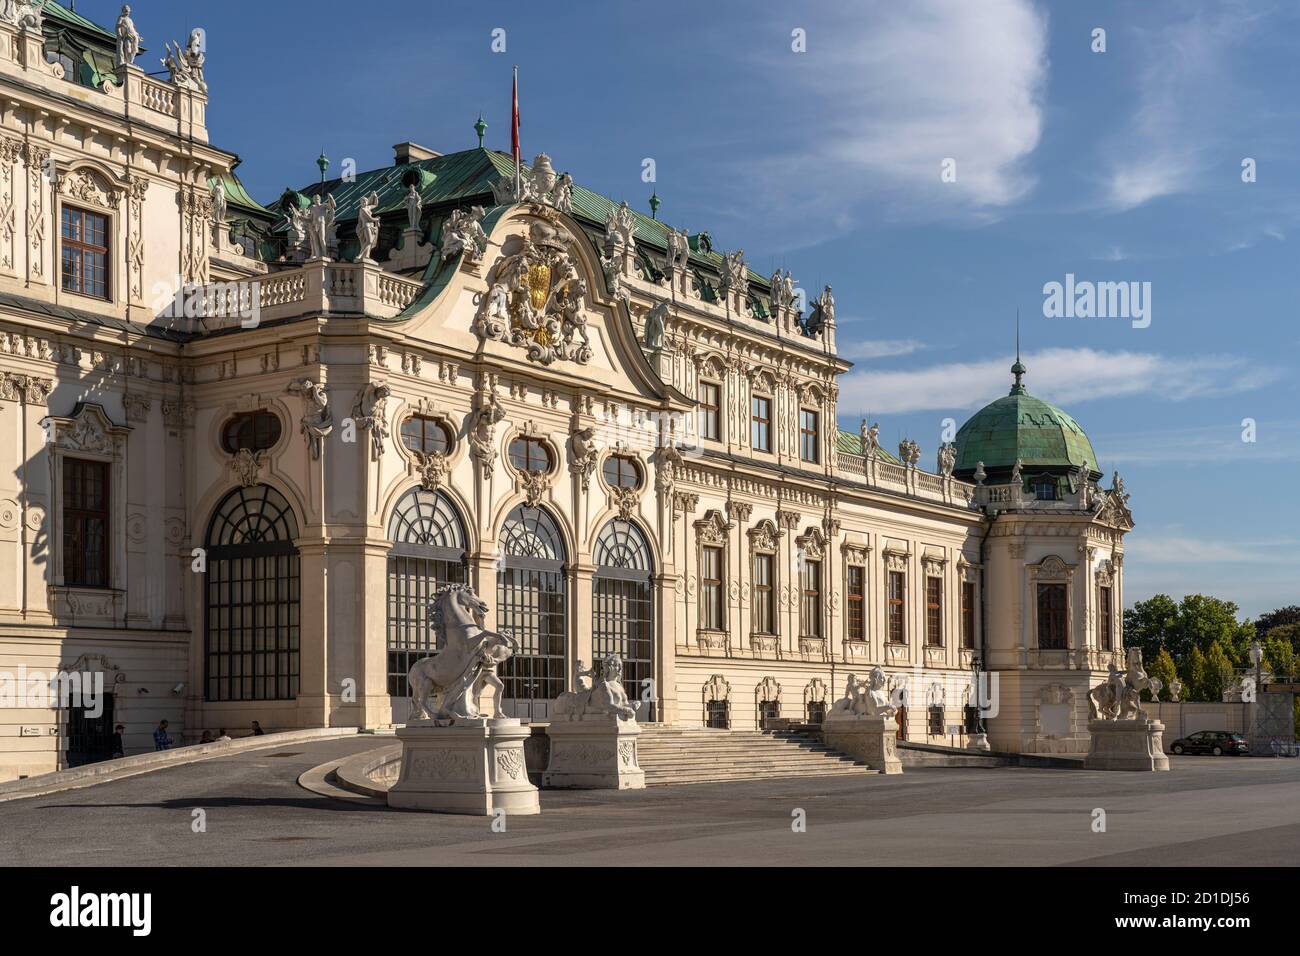 DAS Obere Schloss Belvedere à Wien, Österreich, Europa | Palais du Belvédère supérieur à Vienne, Autriche, Europe Banque D'Images